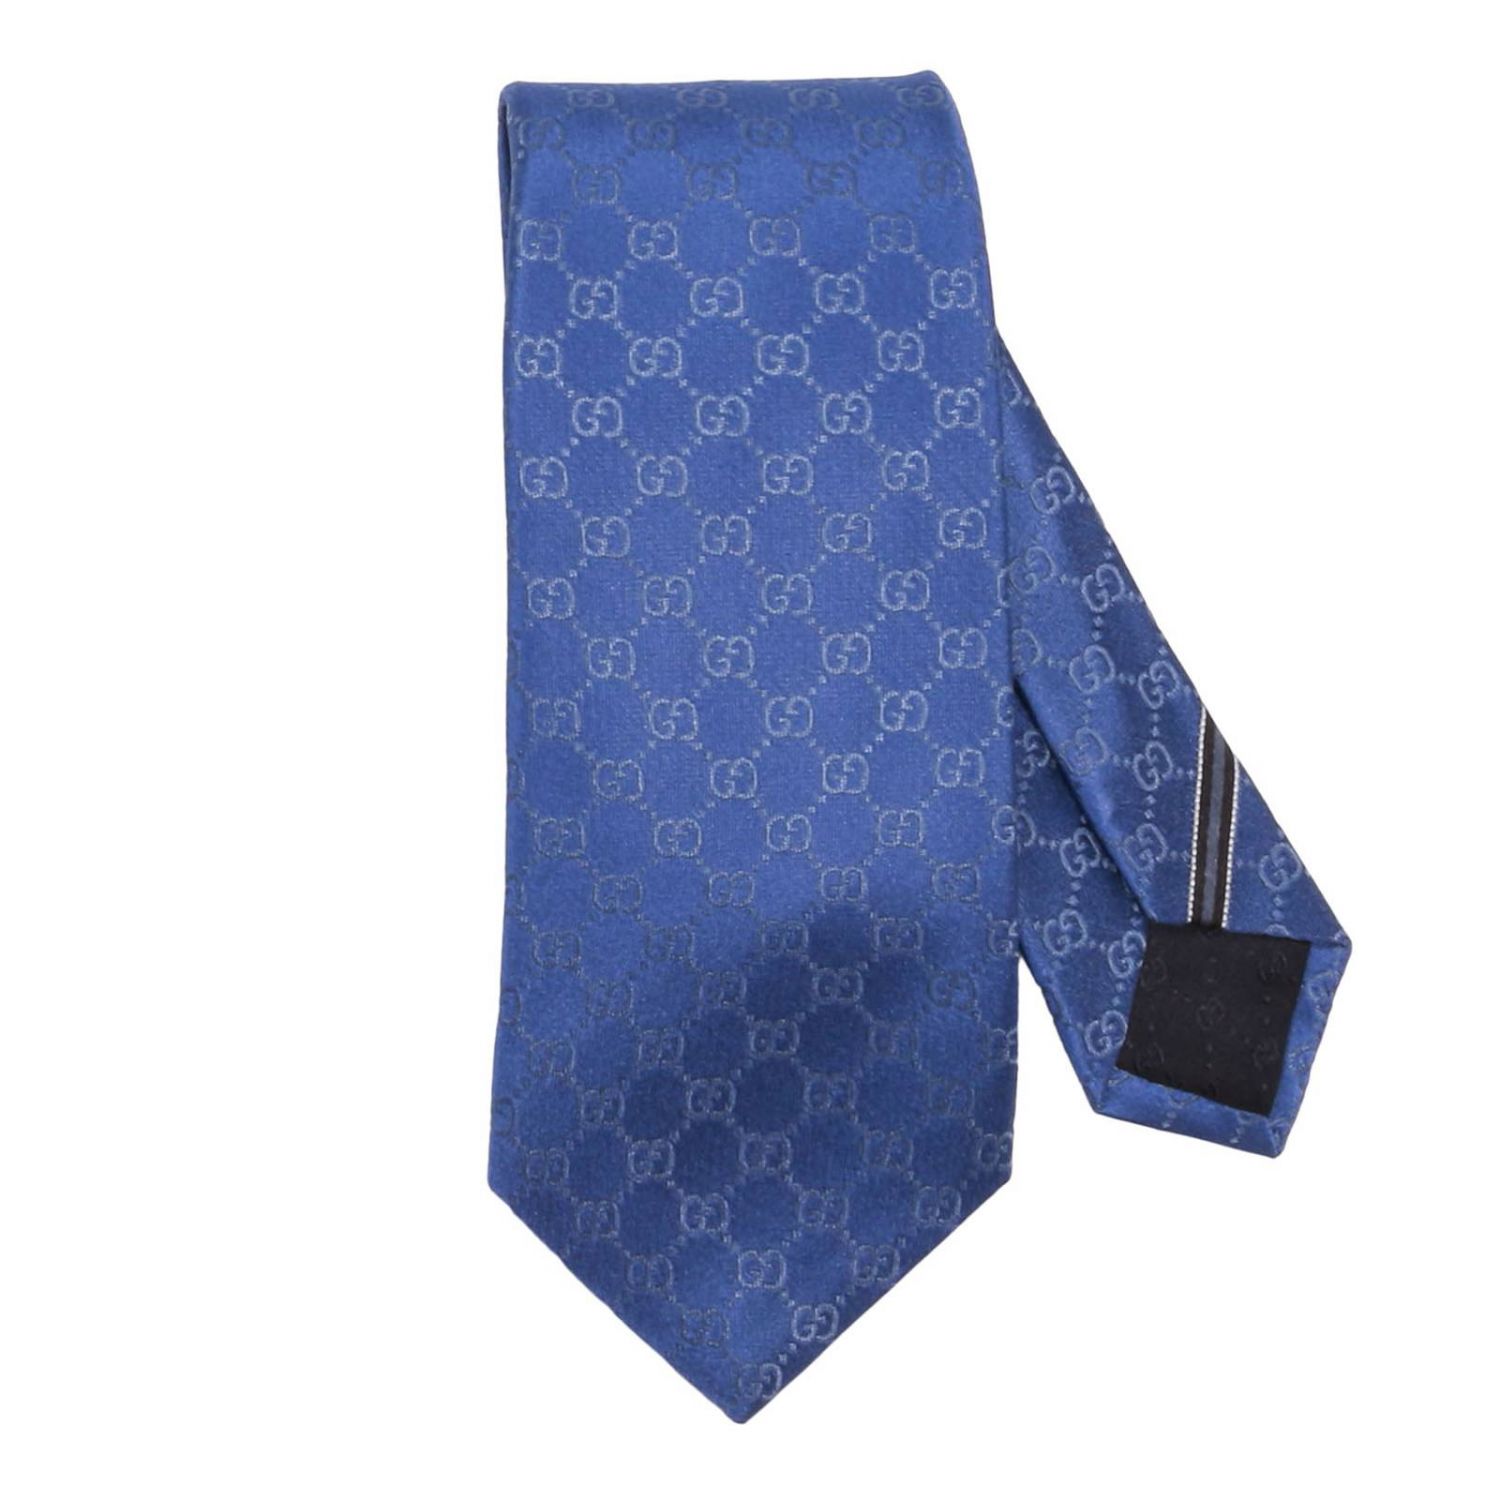 GUCCI: Tie men | Tie Gucci Men Gnawed Blue | Tie Gucci 456520 400 Giglio EN